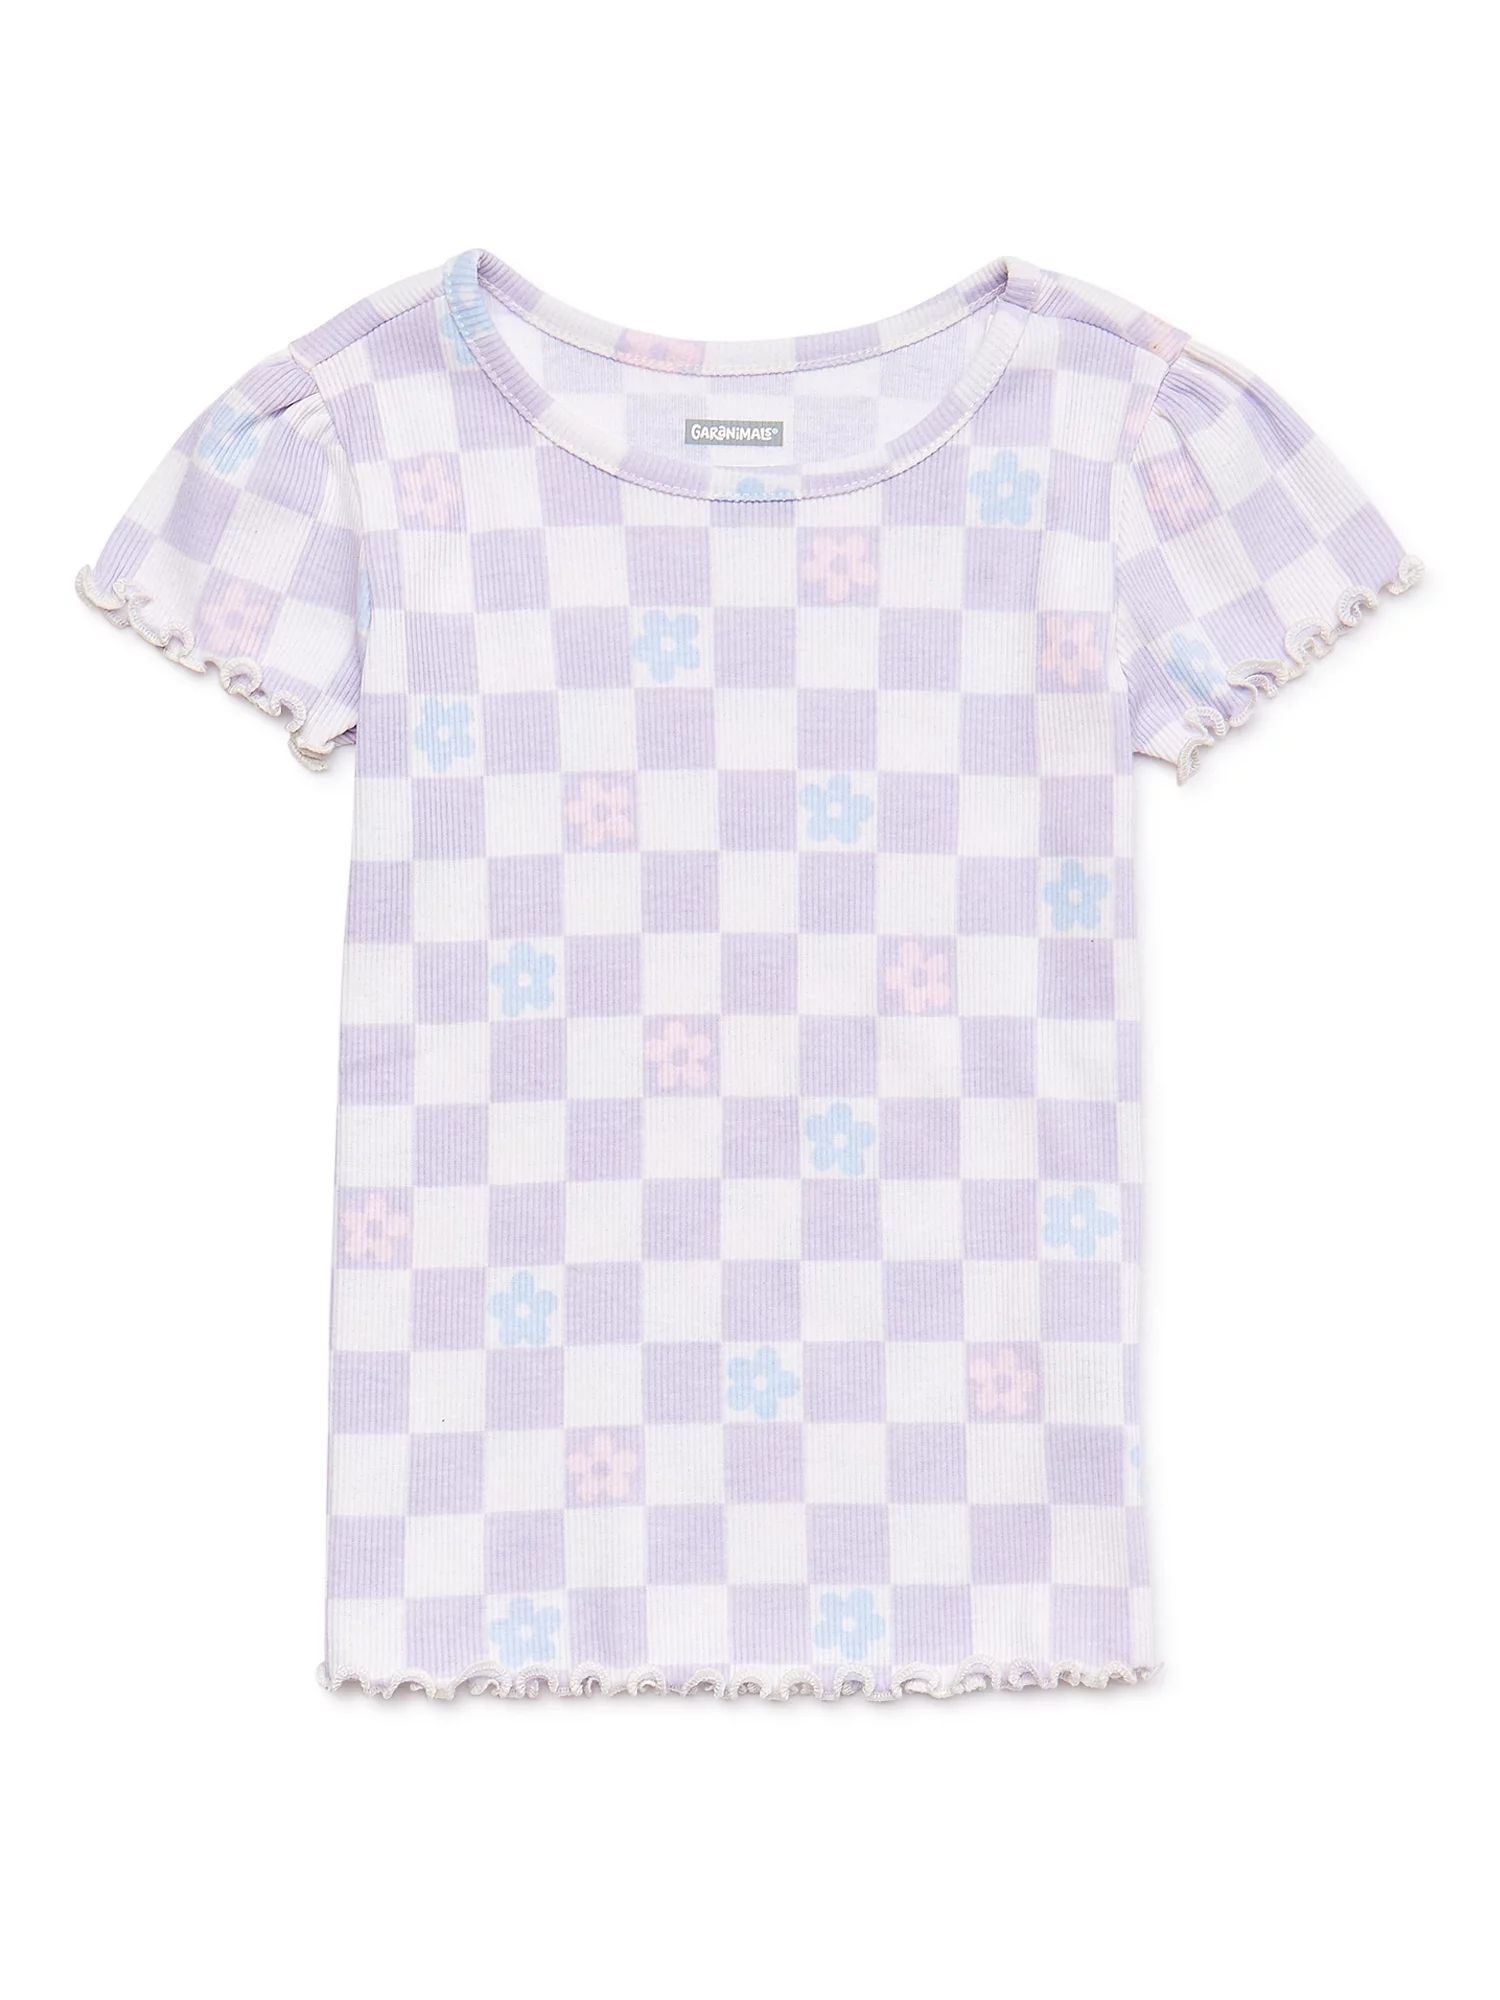 Garanimals Toddler Girls Short Sleeve Ribbed Top, Sizes 12M-5T | Walmart (US)